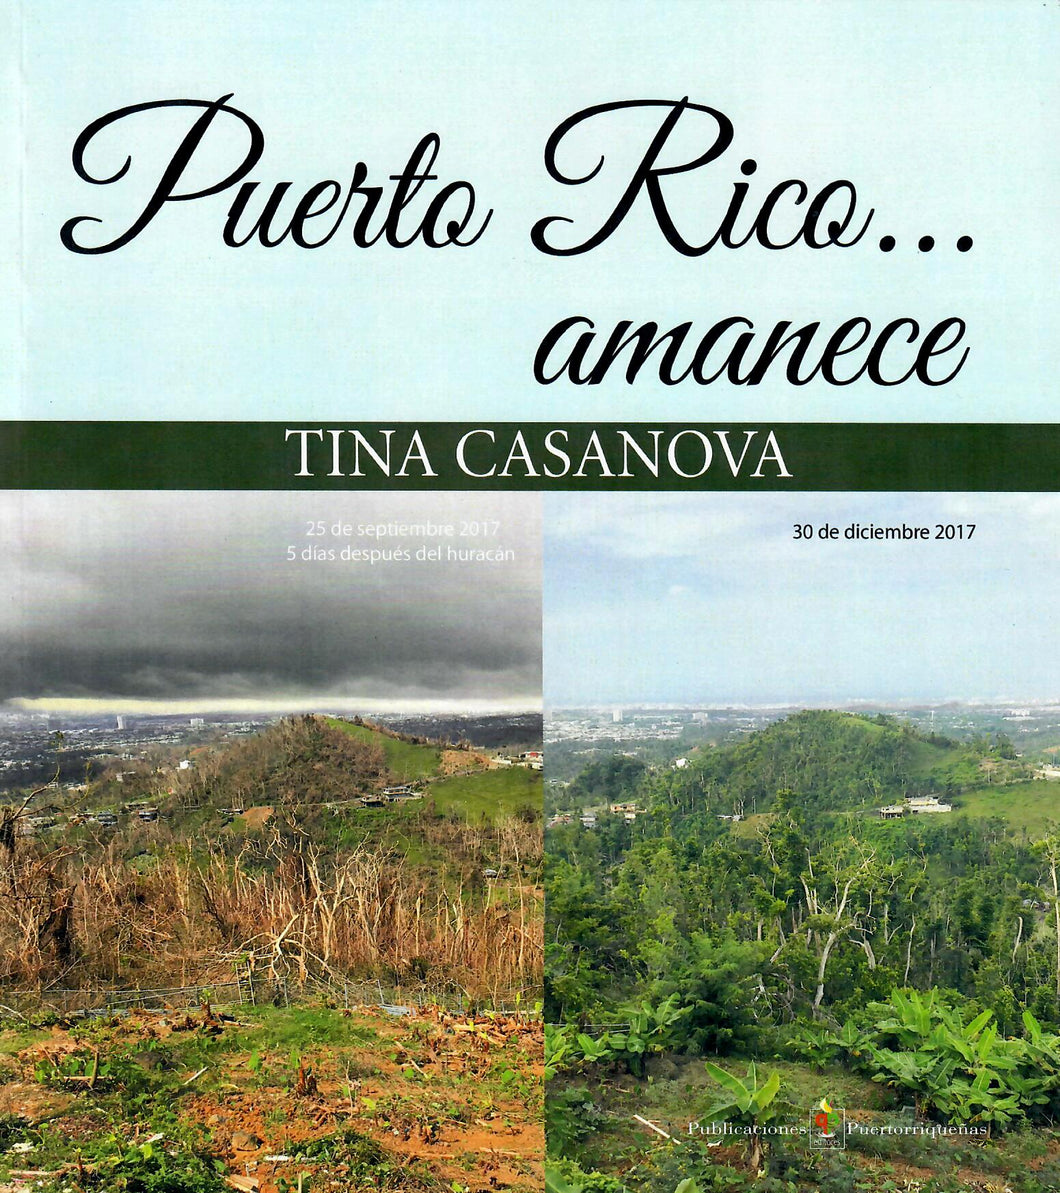 PUERTO RICO... AMANECE - Tina Casanova